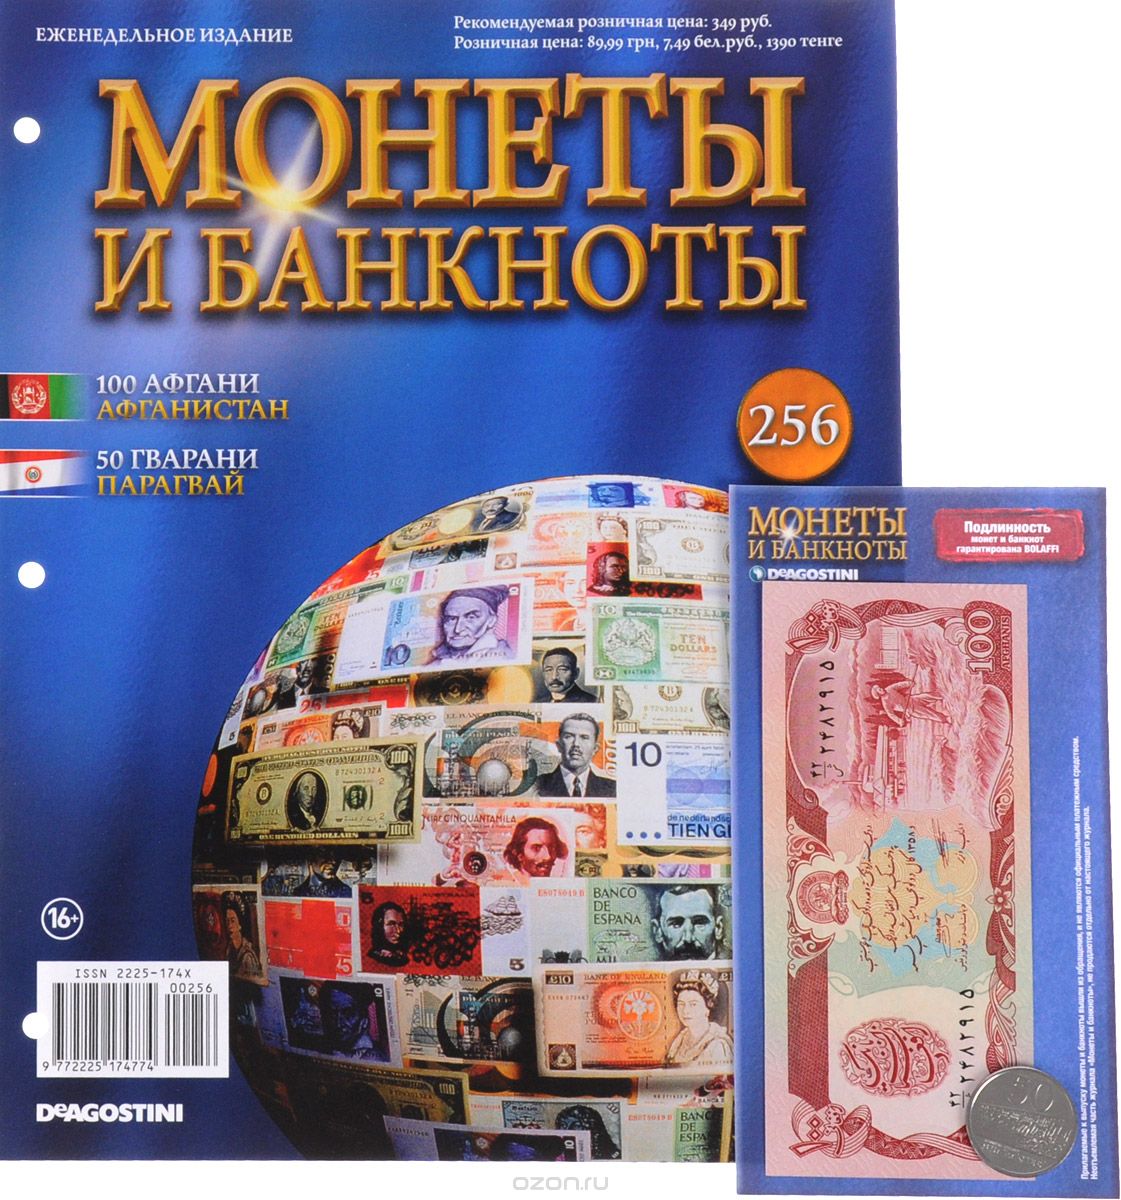 Скачать книгу "Журнал "Монеты и банкноты" №256"